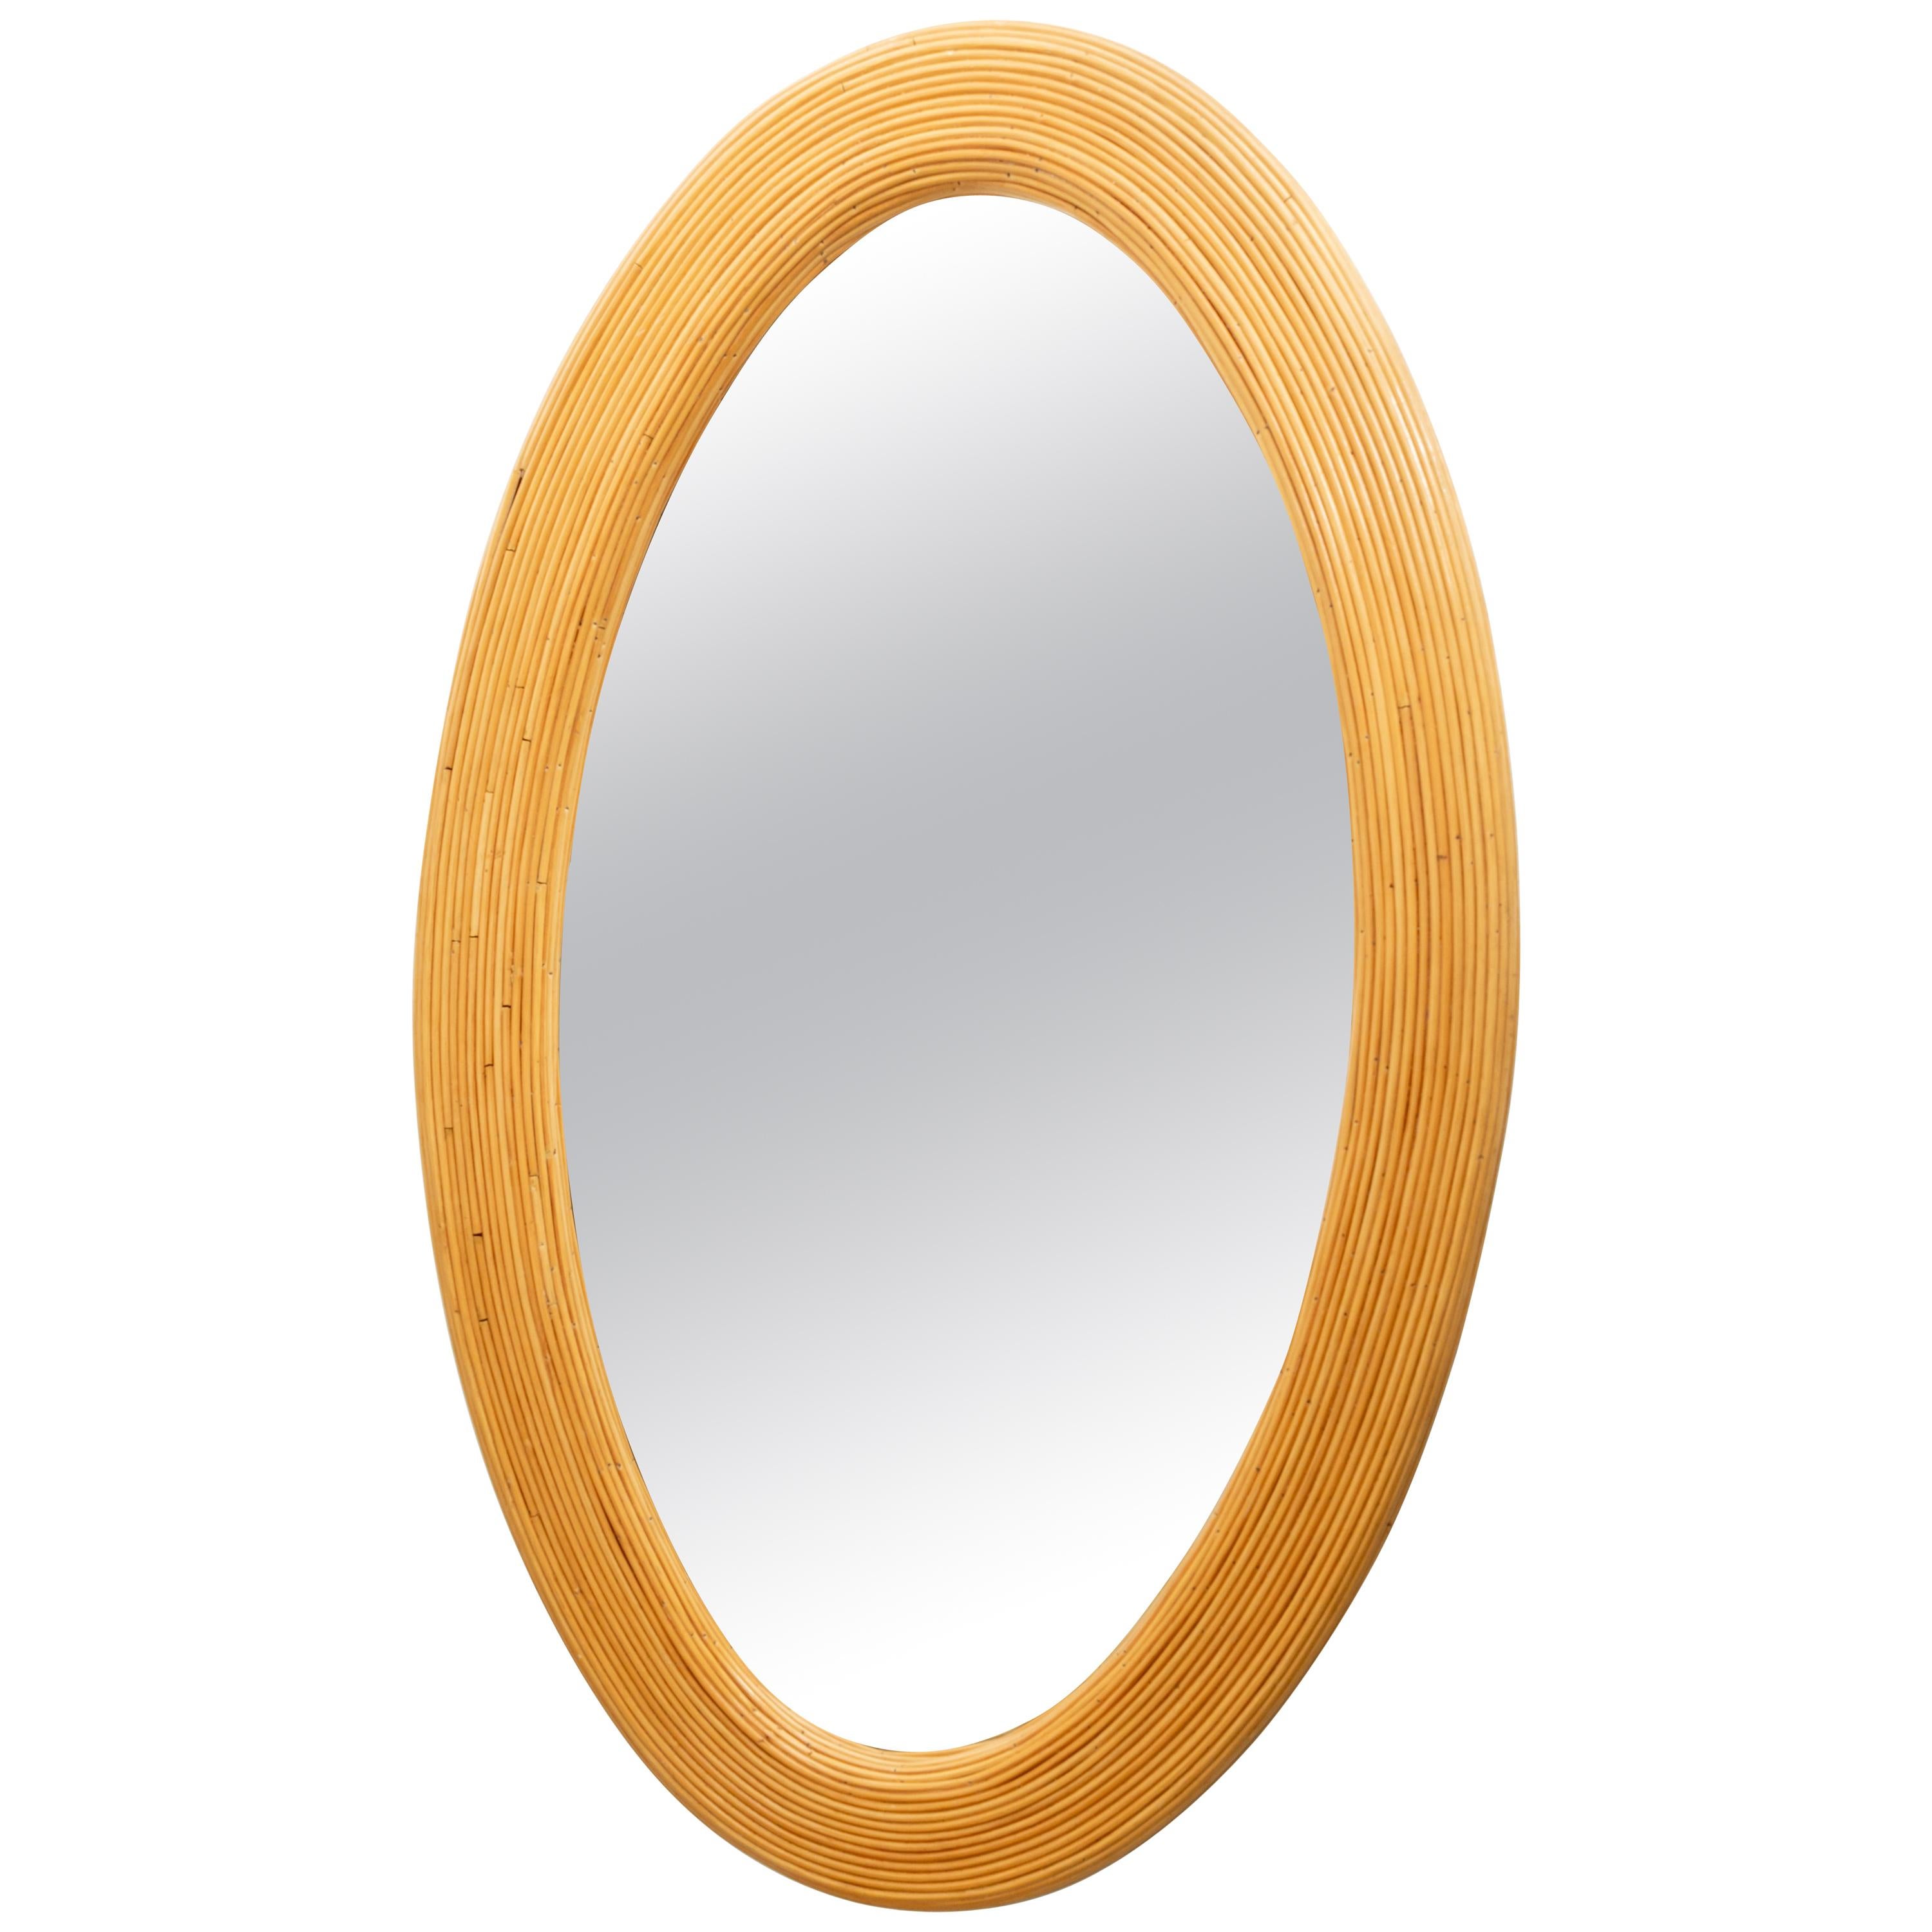 Grand miroir ovale en roseau de bambou tissé